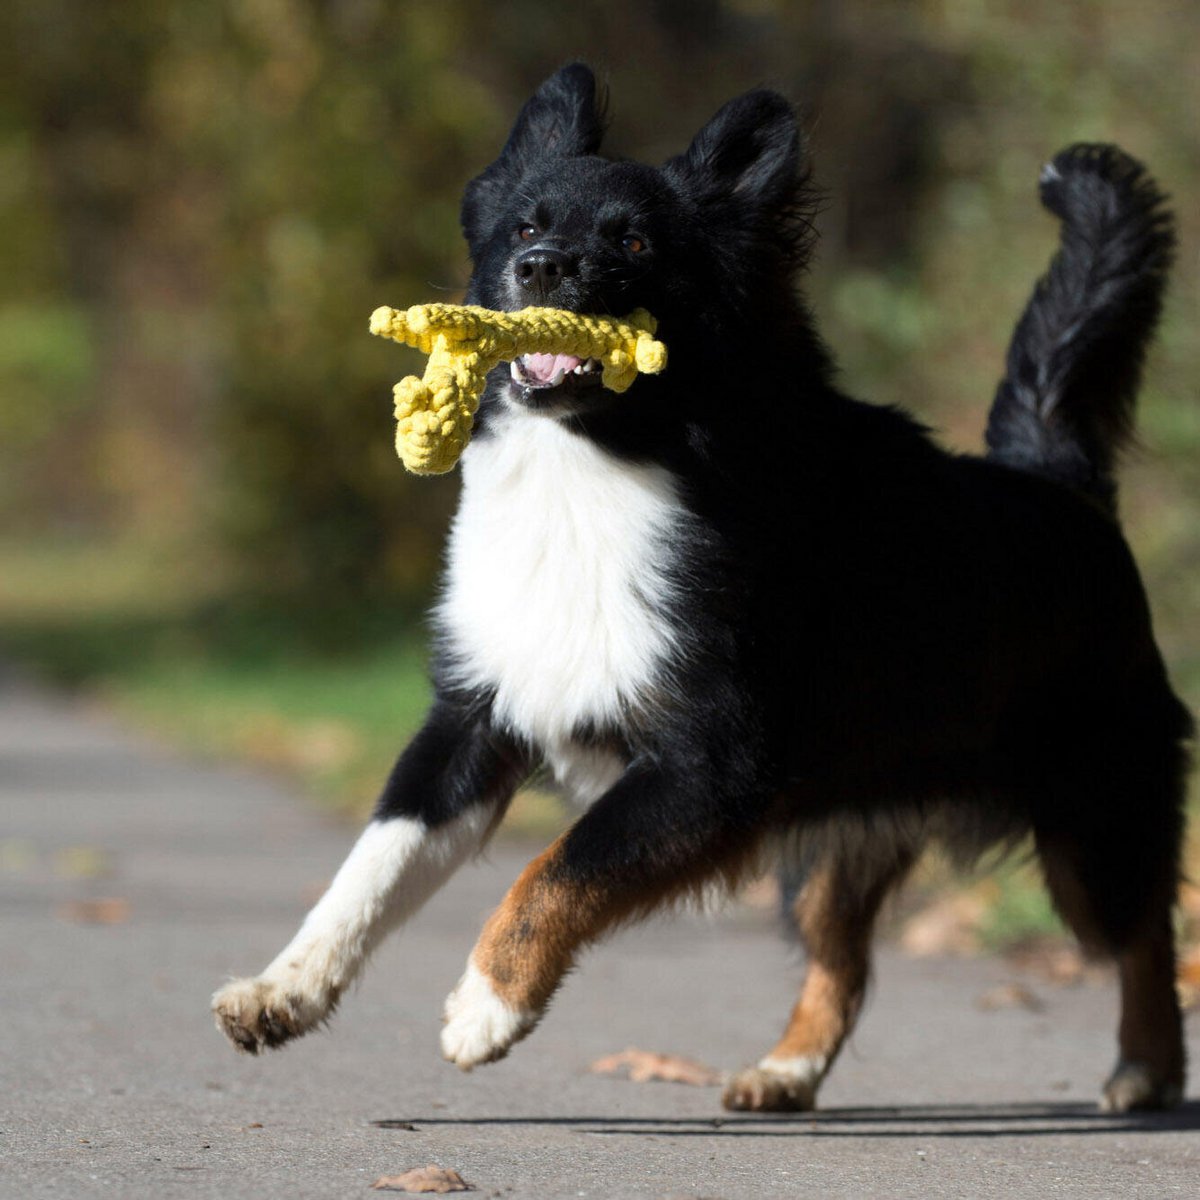 LABONI Wild Life - Spielzeug-Set für Hunde aus zahnpflegendem Baumwolltau